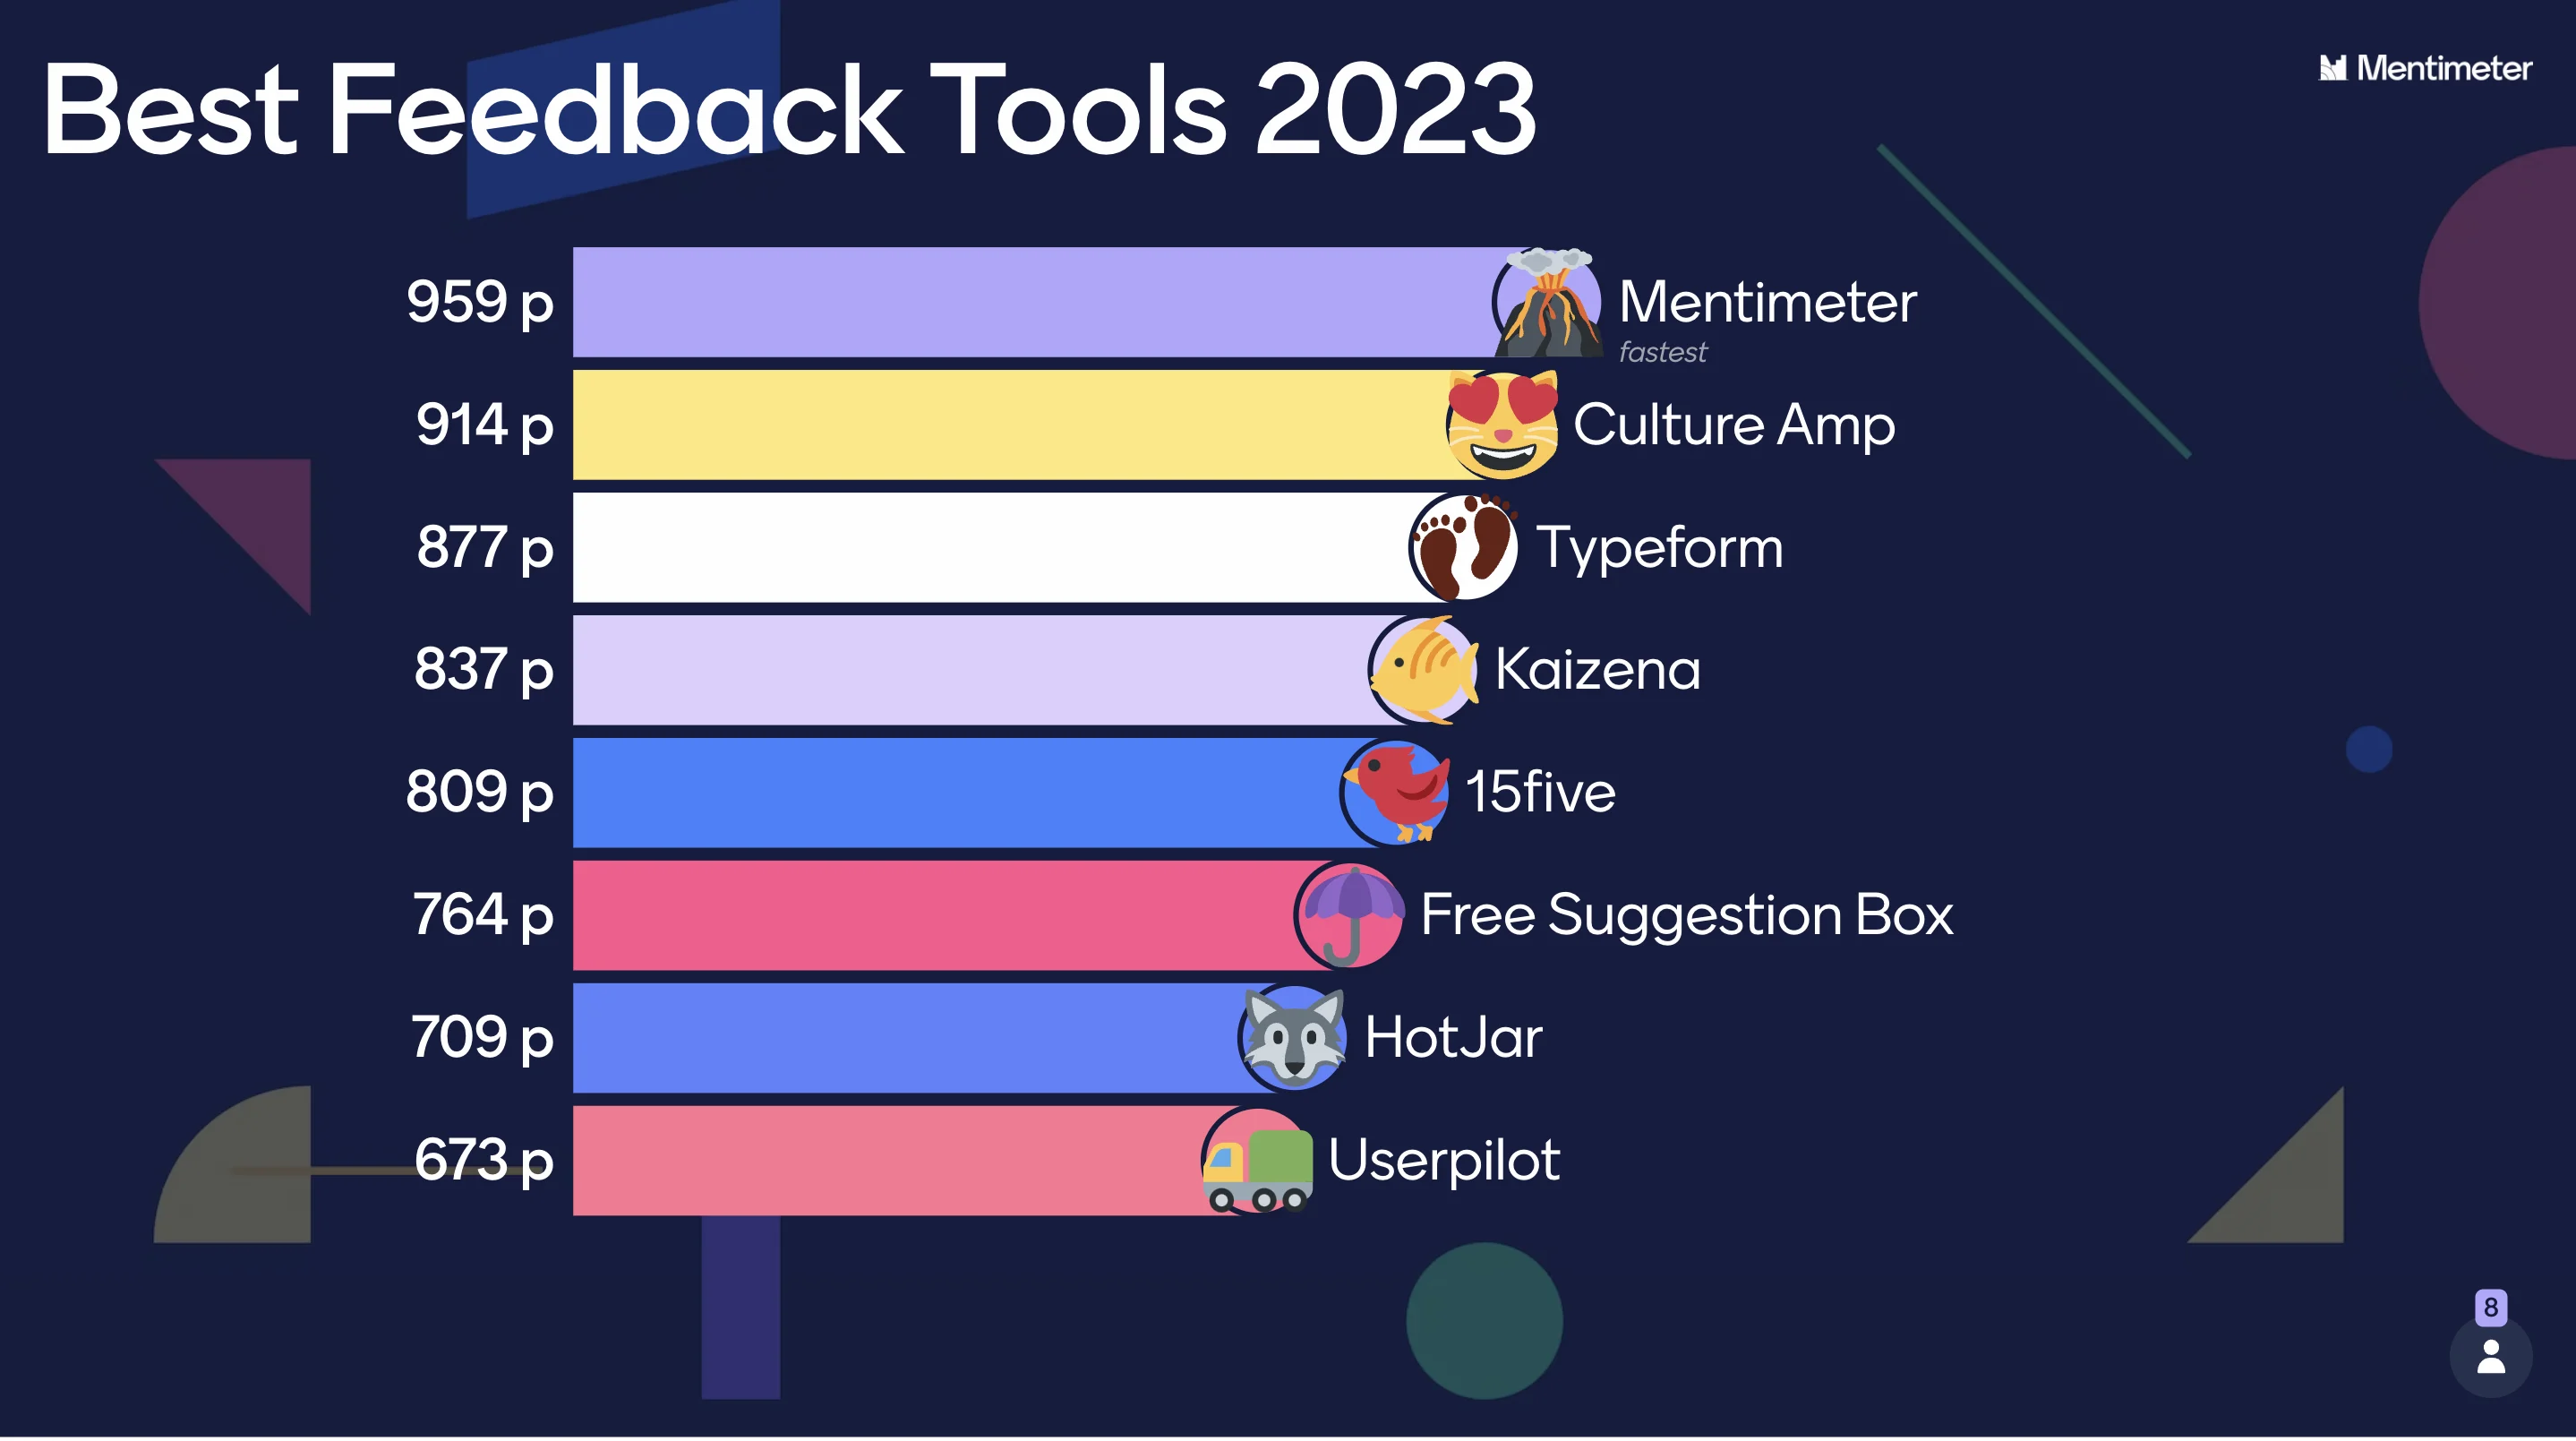 8 Best Feedback Tools in 2023